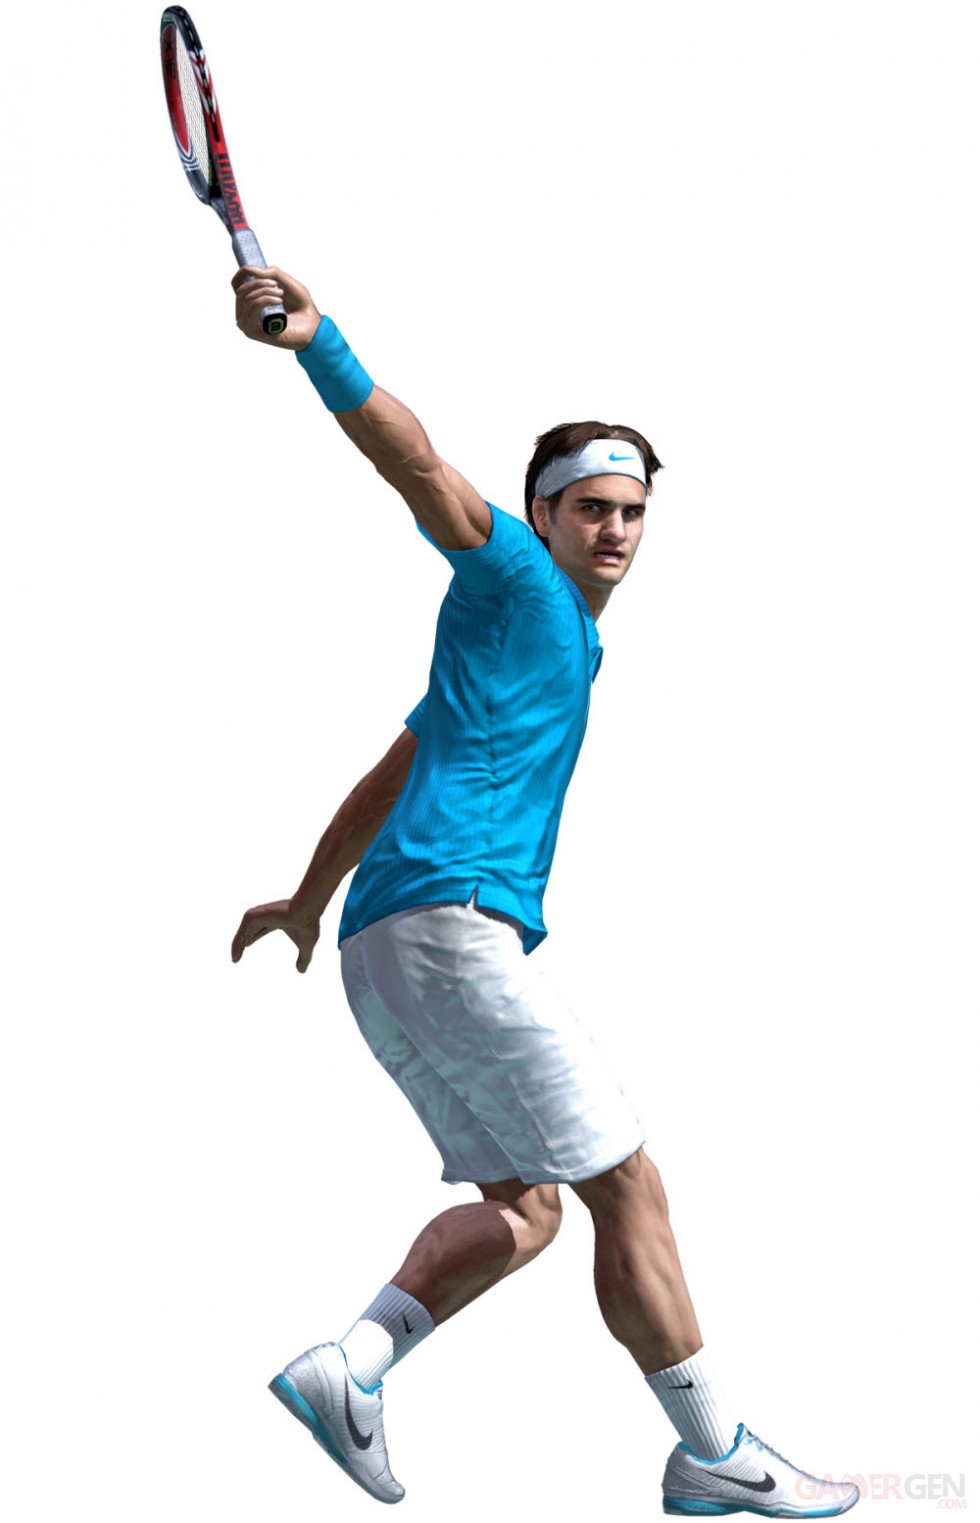 virtua-tennis-4-screenshots-captures-federer-20012011